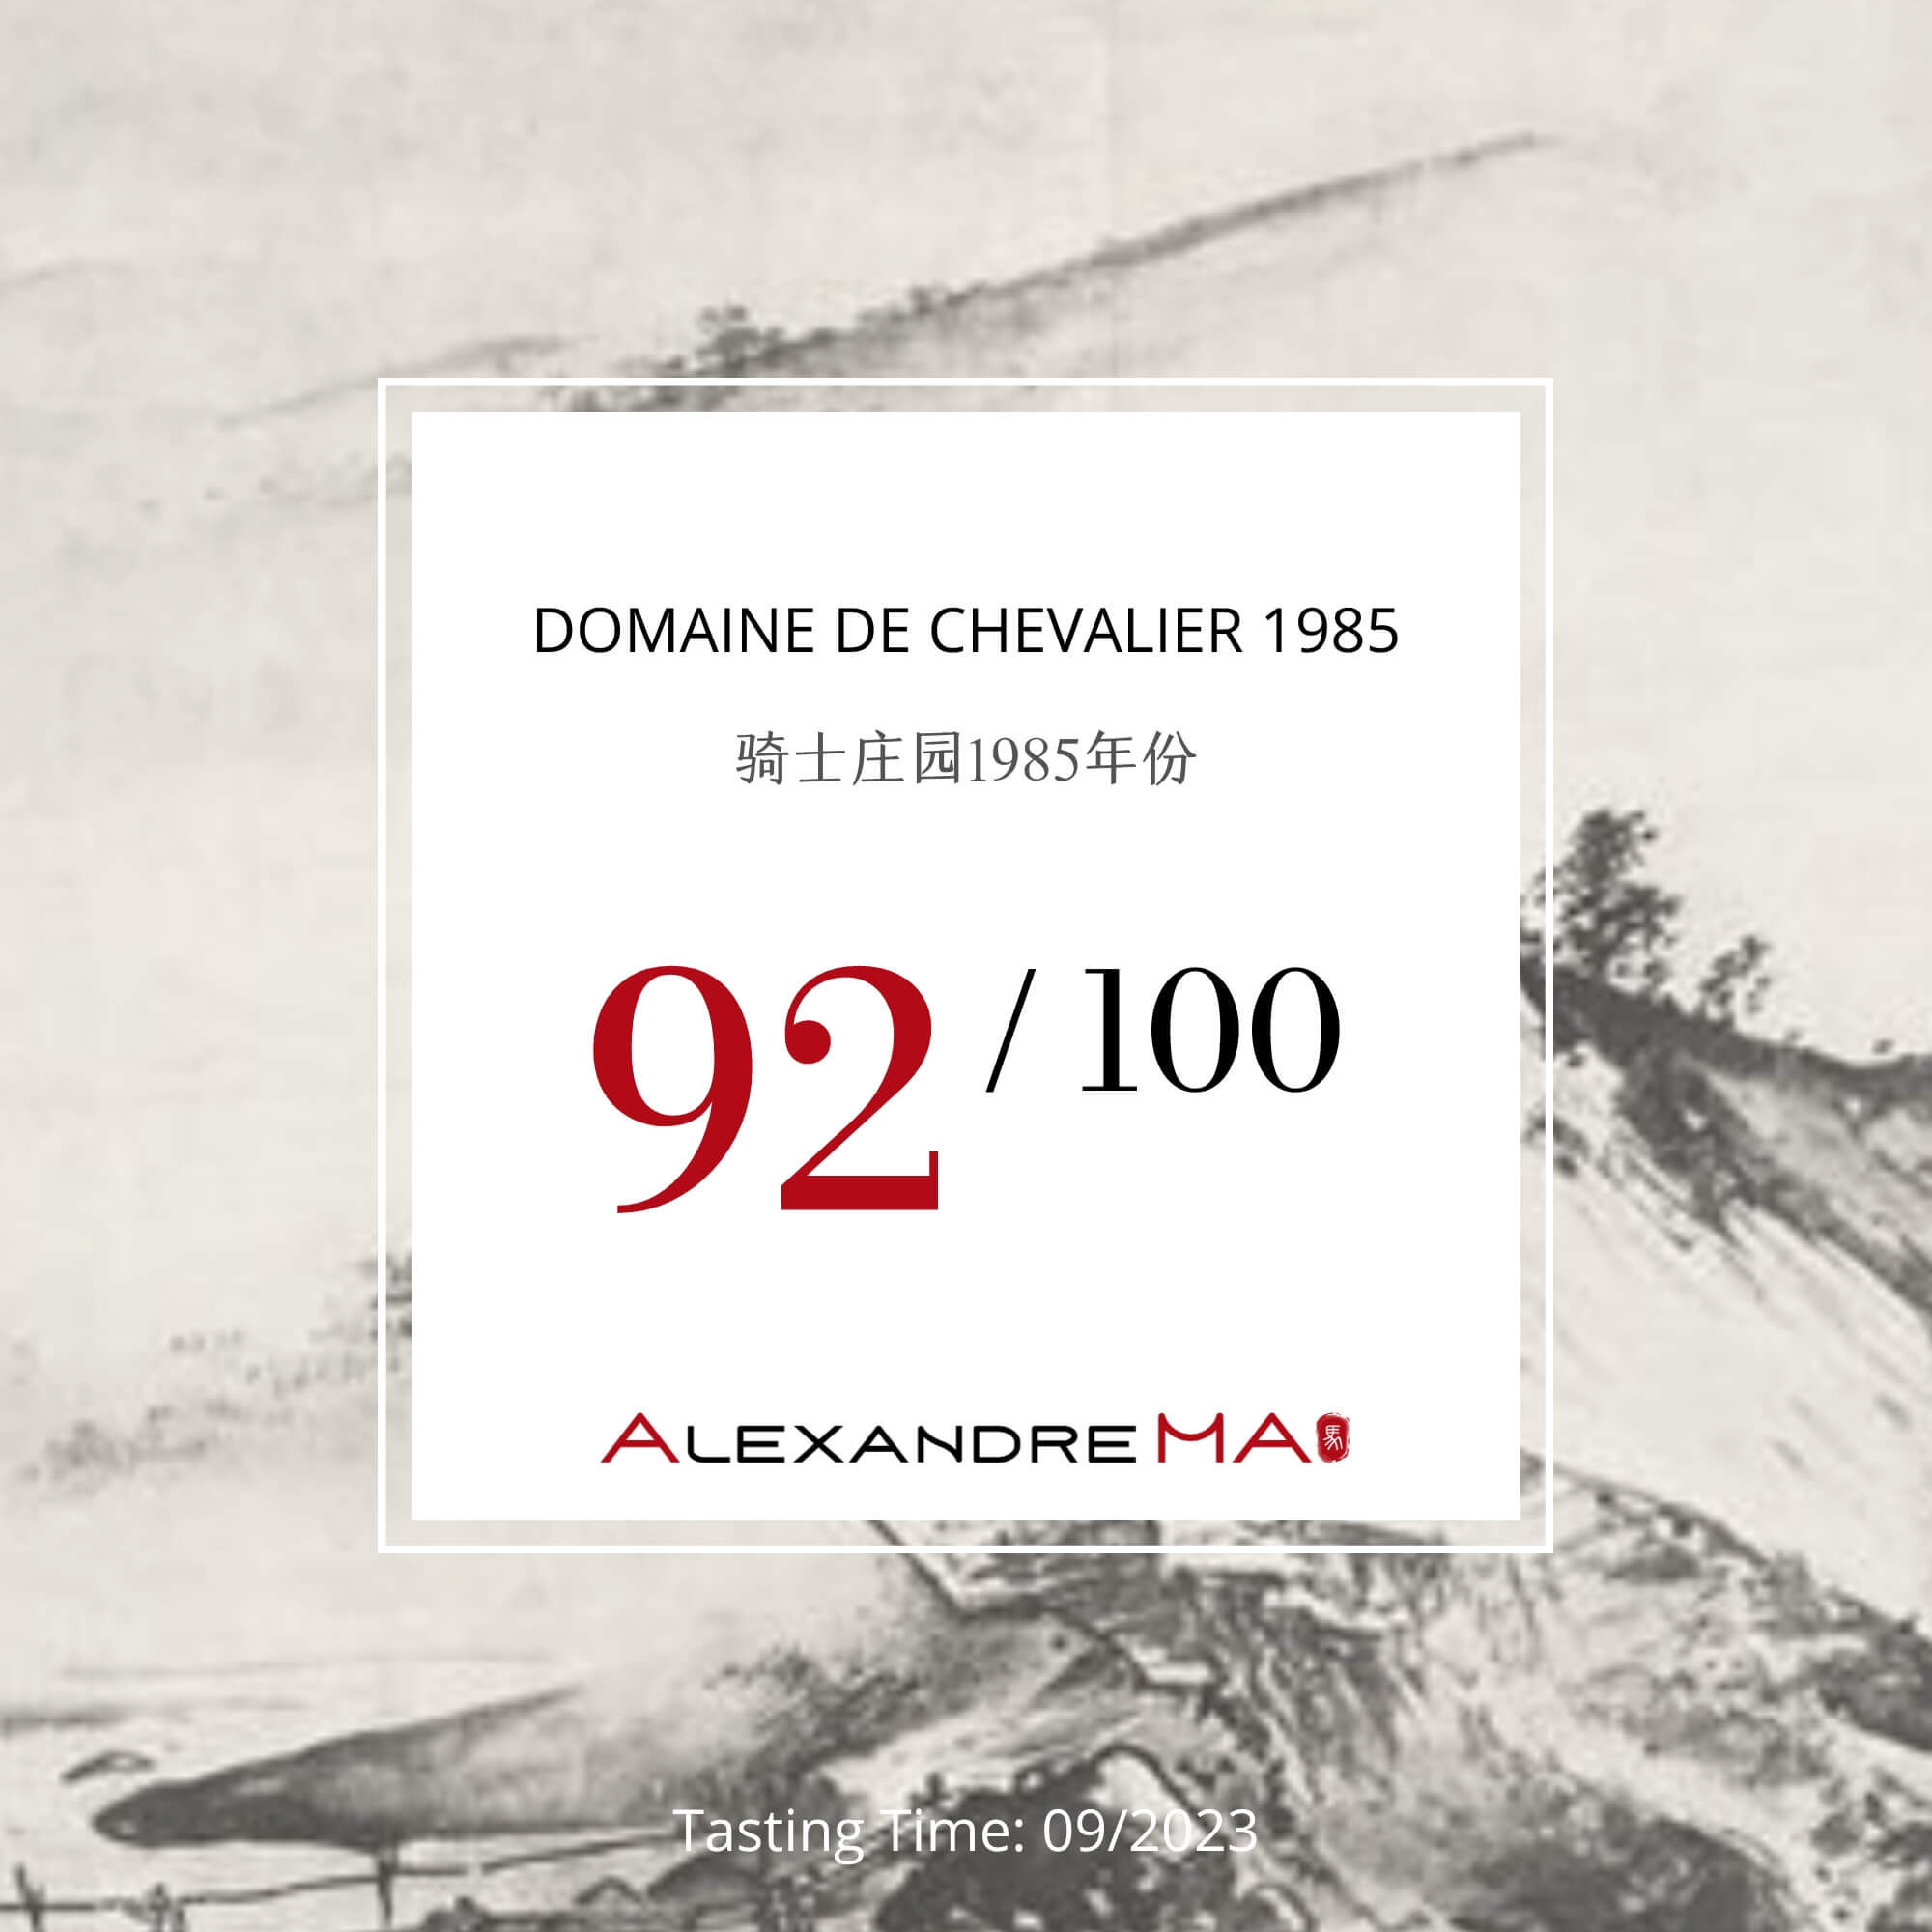 Domaine de Chevalier 1985 - Alexandre MA